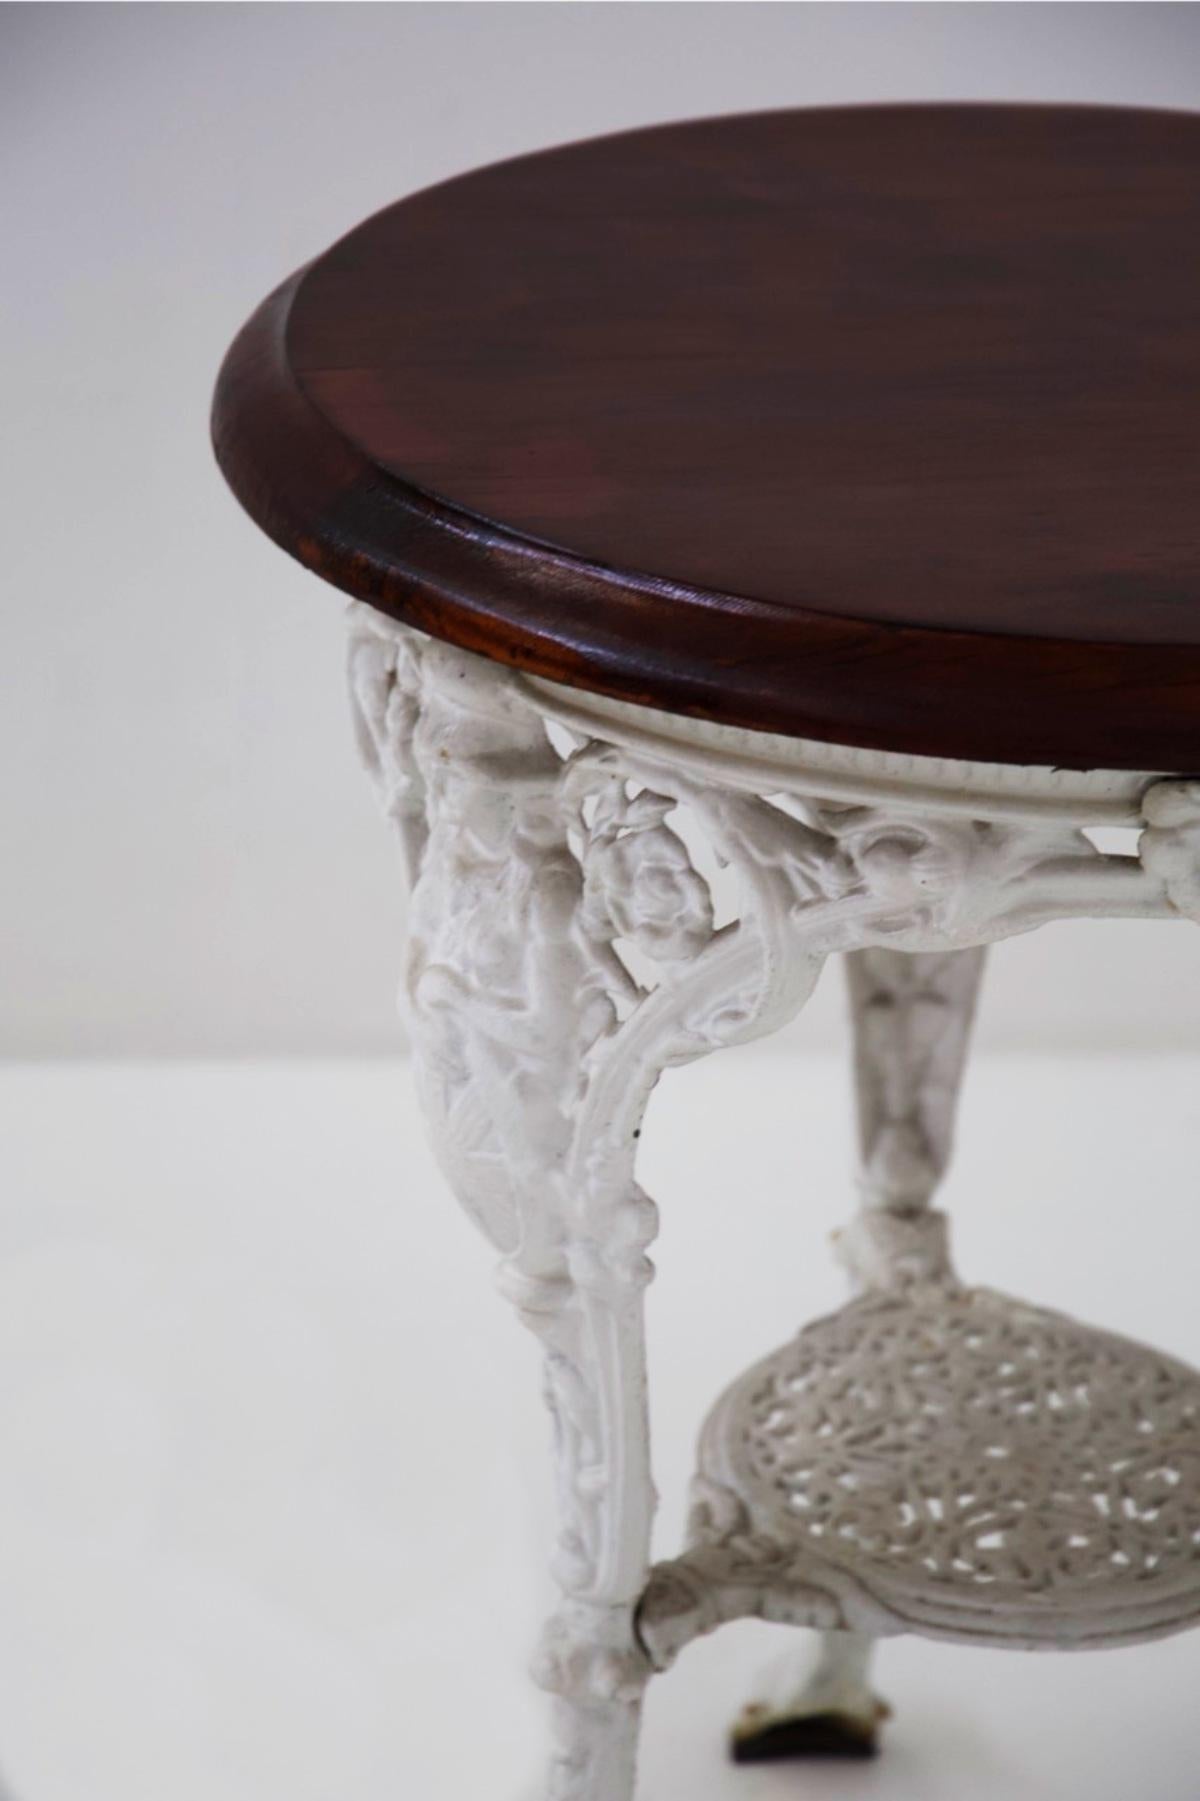 Très rare table basse victorienne en fonte fabriquée à la fin des années 1800, de fabrication anglaise.
La table basse est petite et est destinée à un usage de jardin, comme le montrent clairement les matériaux.
La structure porteuse est